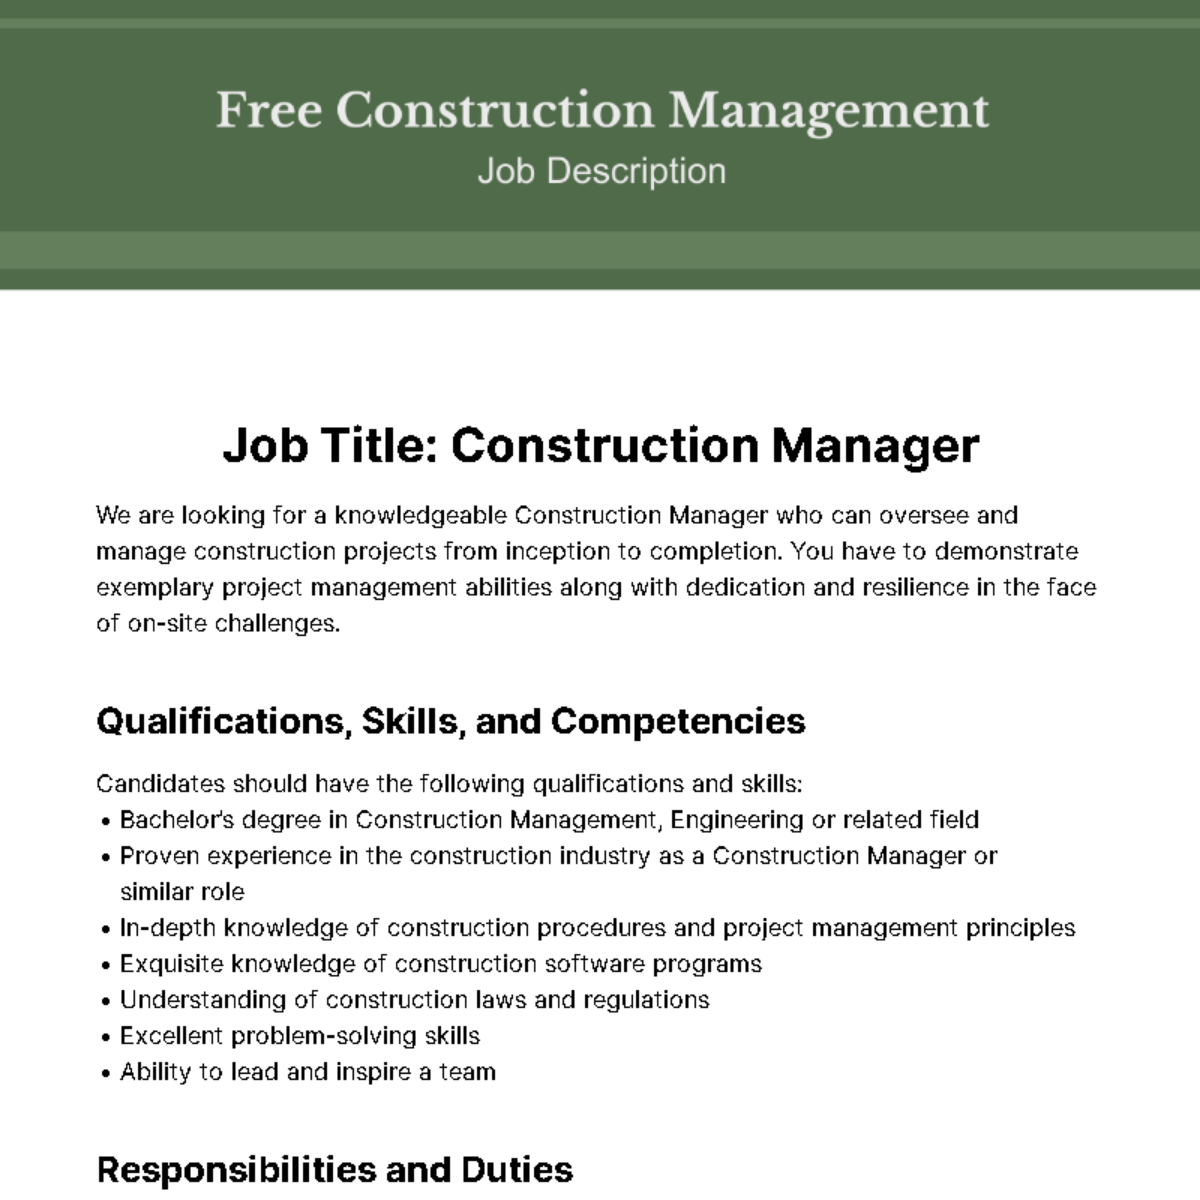 Free Construction Management Job Description Template